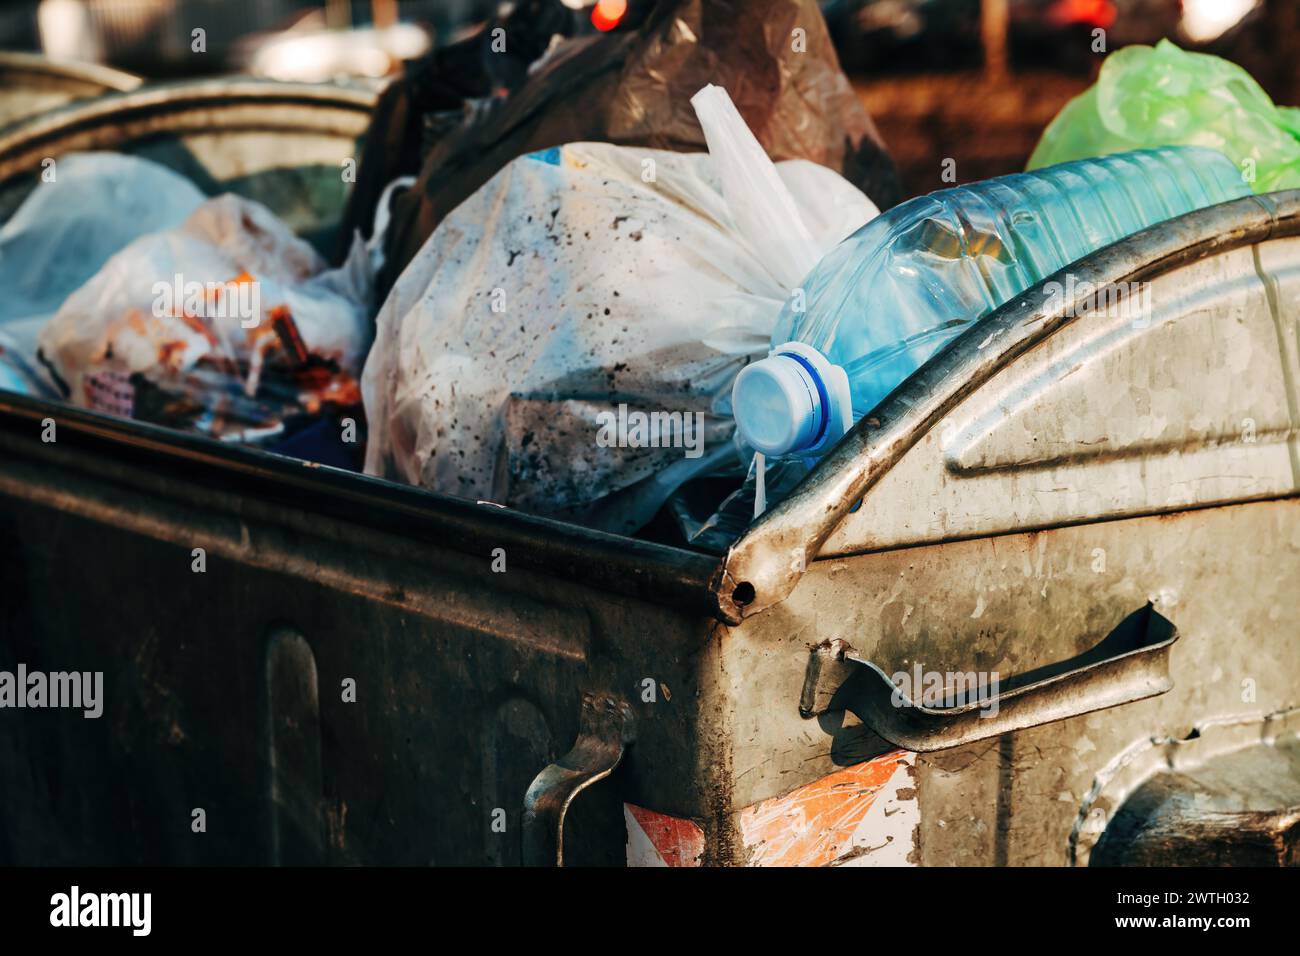 Déchets et ordures dans une benne à ordures métallique dans la rue, mise au point sélective Banque D'Images